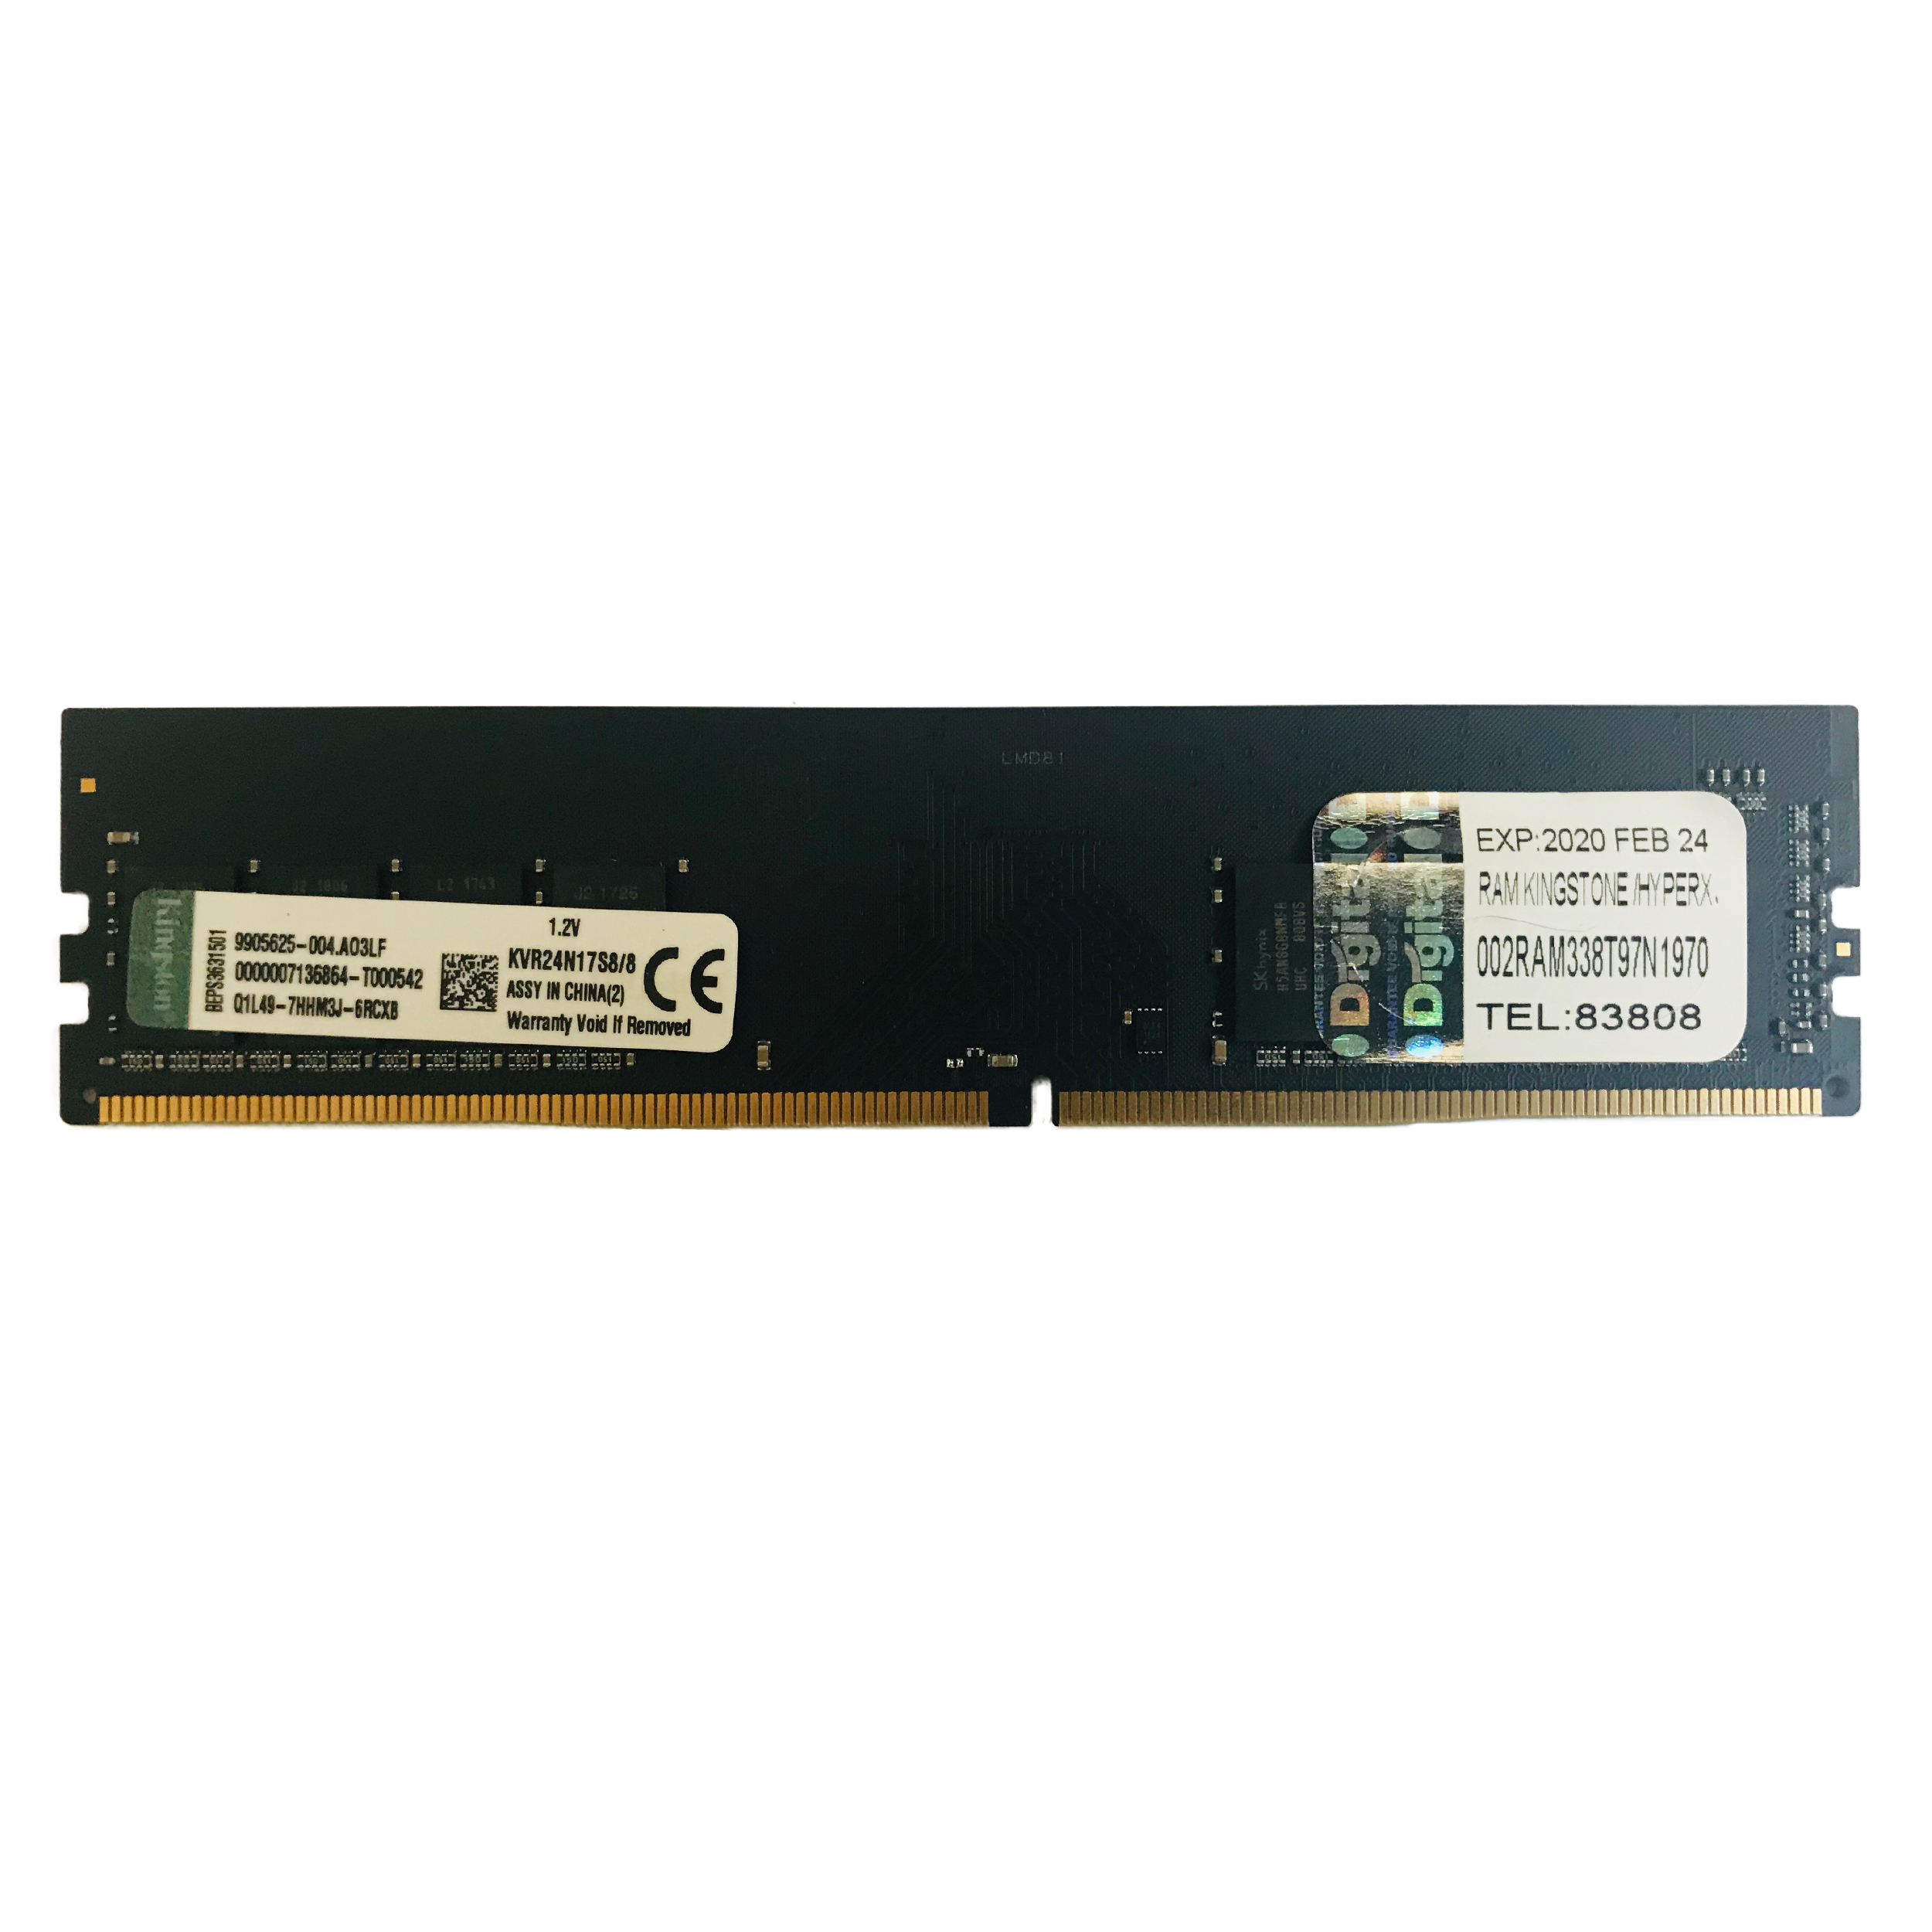 نقد و بررسی رم دسکتاپ DDR4 تک کاناله 2400 مگاهرتز CL15 کینگستون مدل KVR ظرفیت 8 گیگابایت توسط خریداران